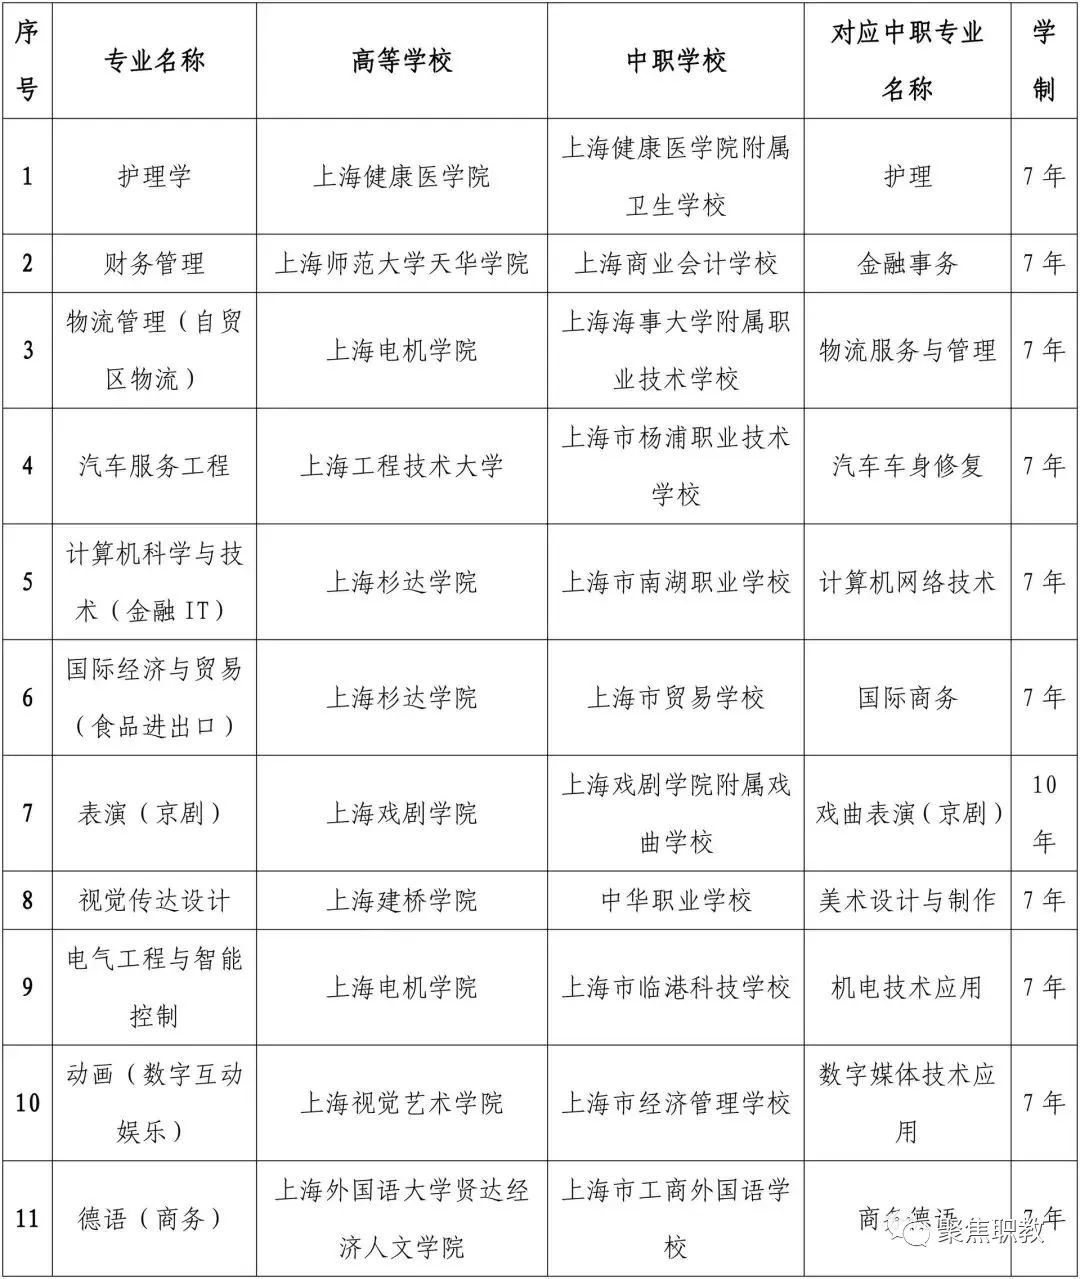 上海2018中本贯通和中高职贯通试点院校专